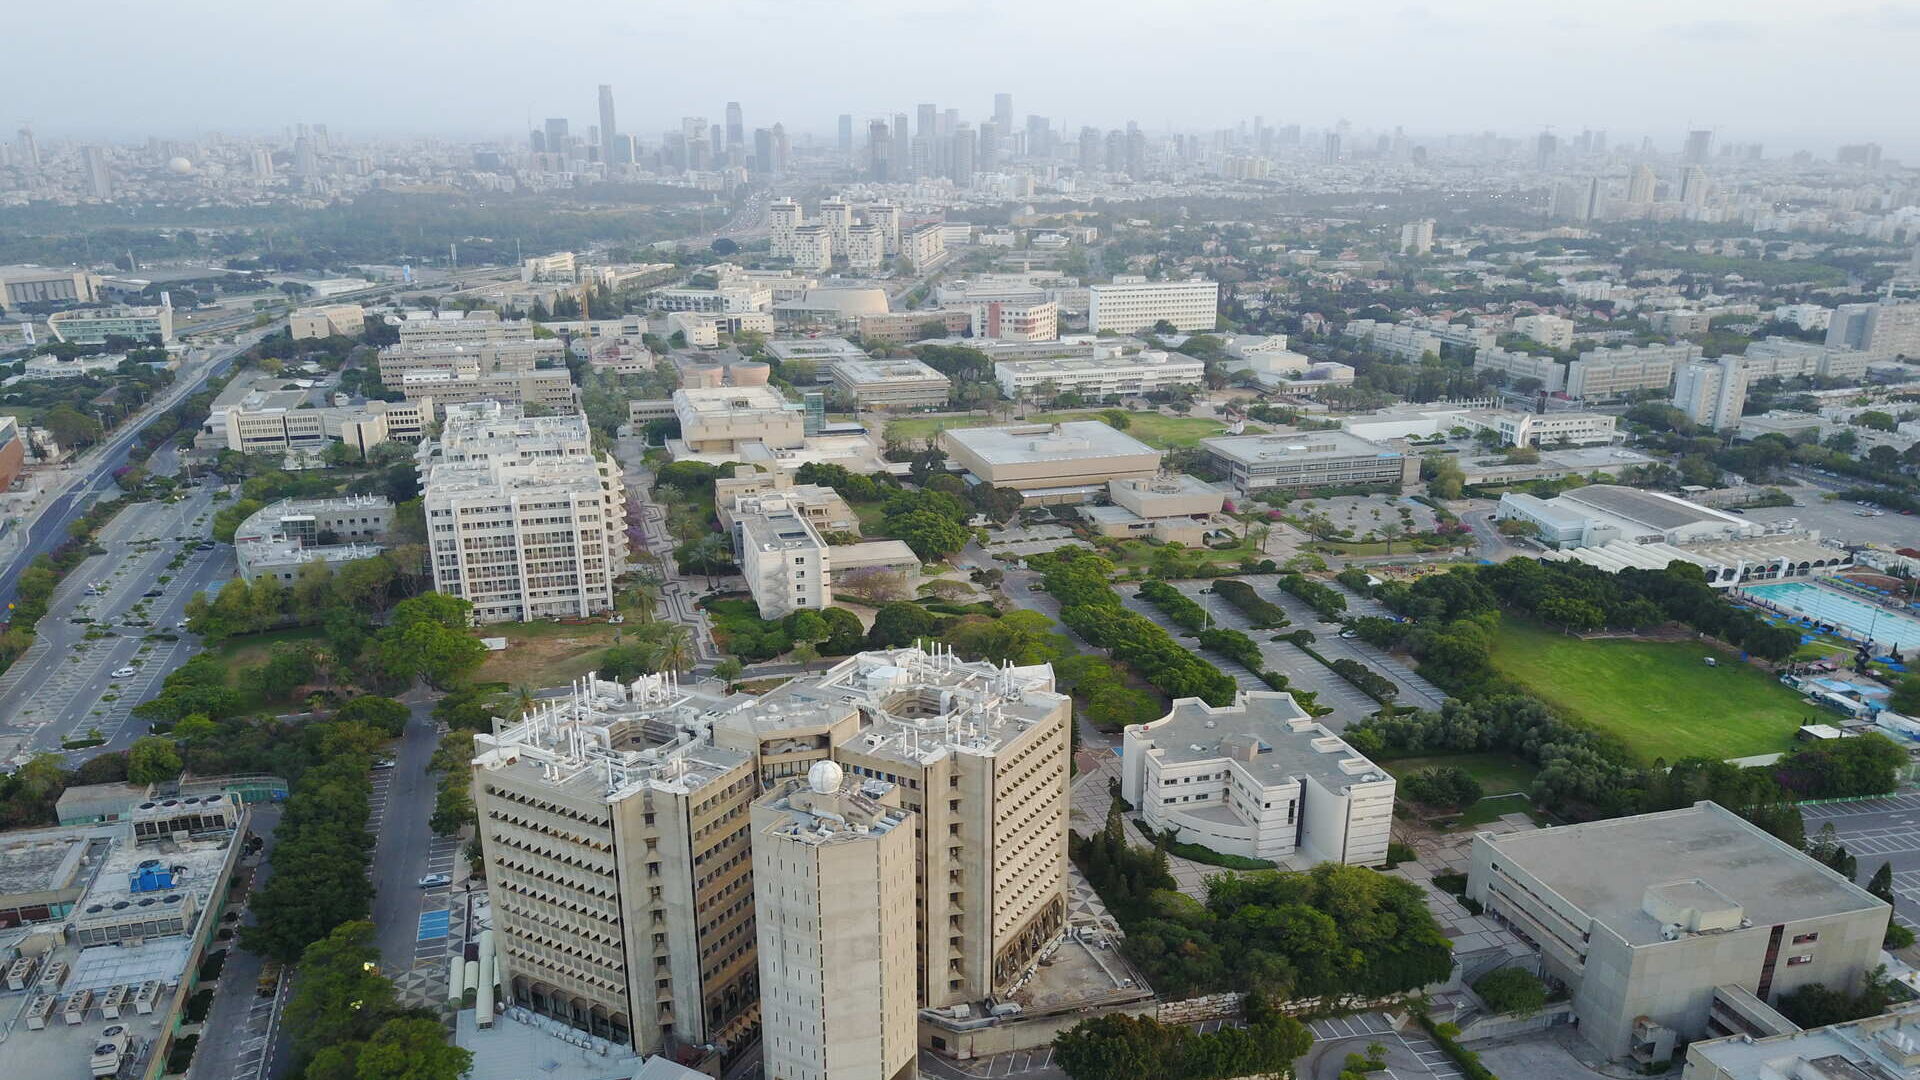 Tel Aviv: Universiteti i Tel Avivit, shkurtuar TAU, është universiteti më i madh publik në Izrael